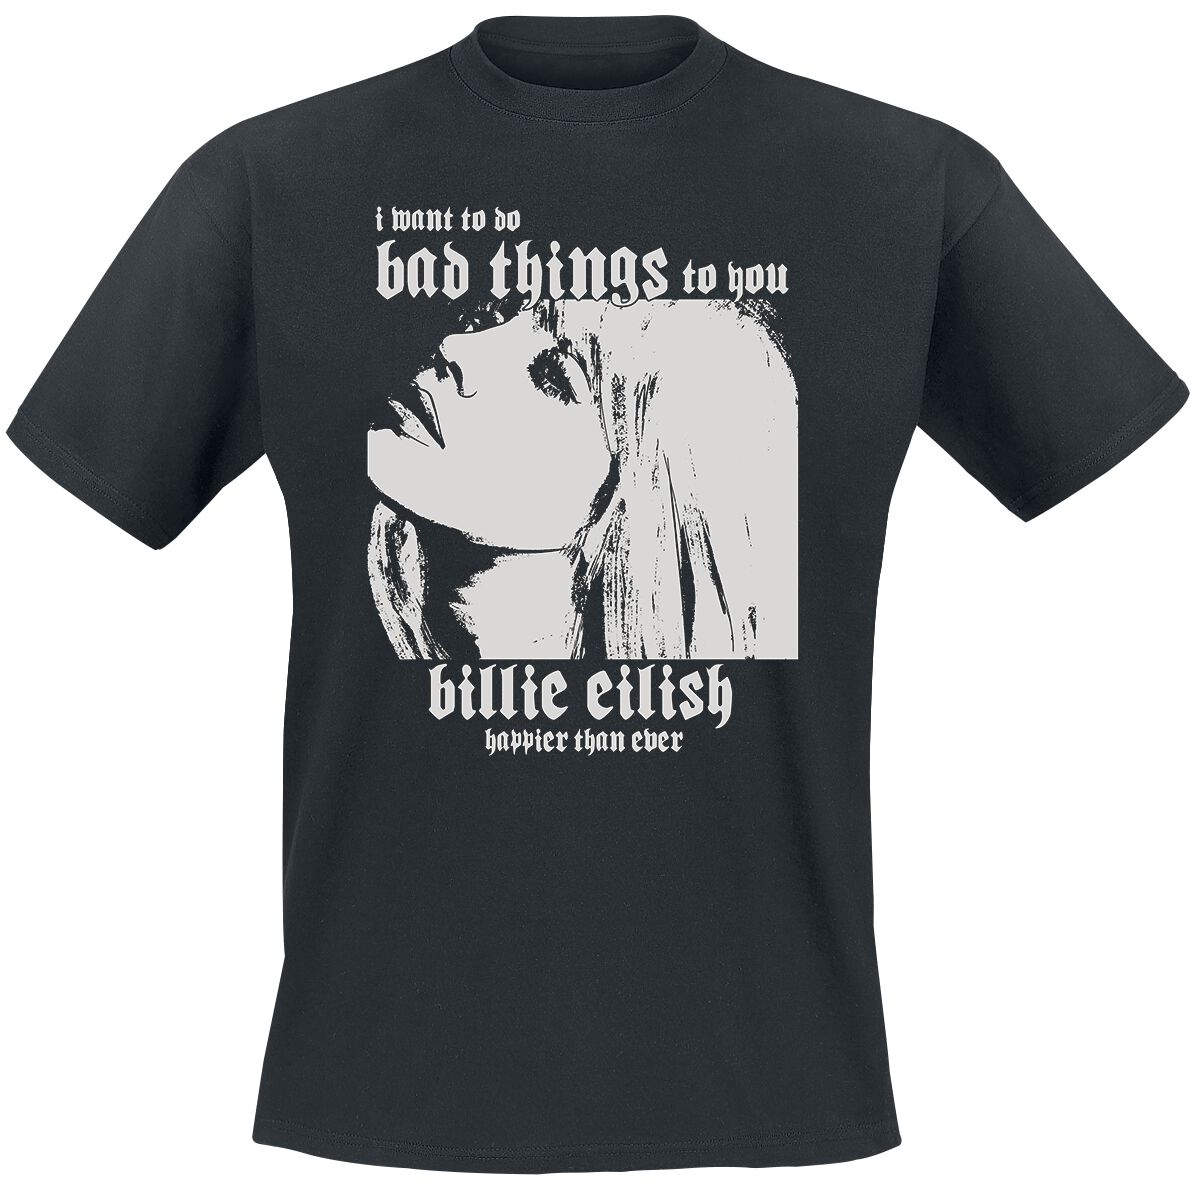 Billie Eilish T-Shirt - Bad Things - S - für Männer - Größe S - schwarz  - Lizenziertes Merchandise!